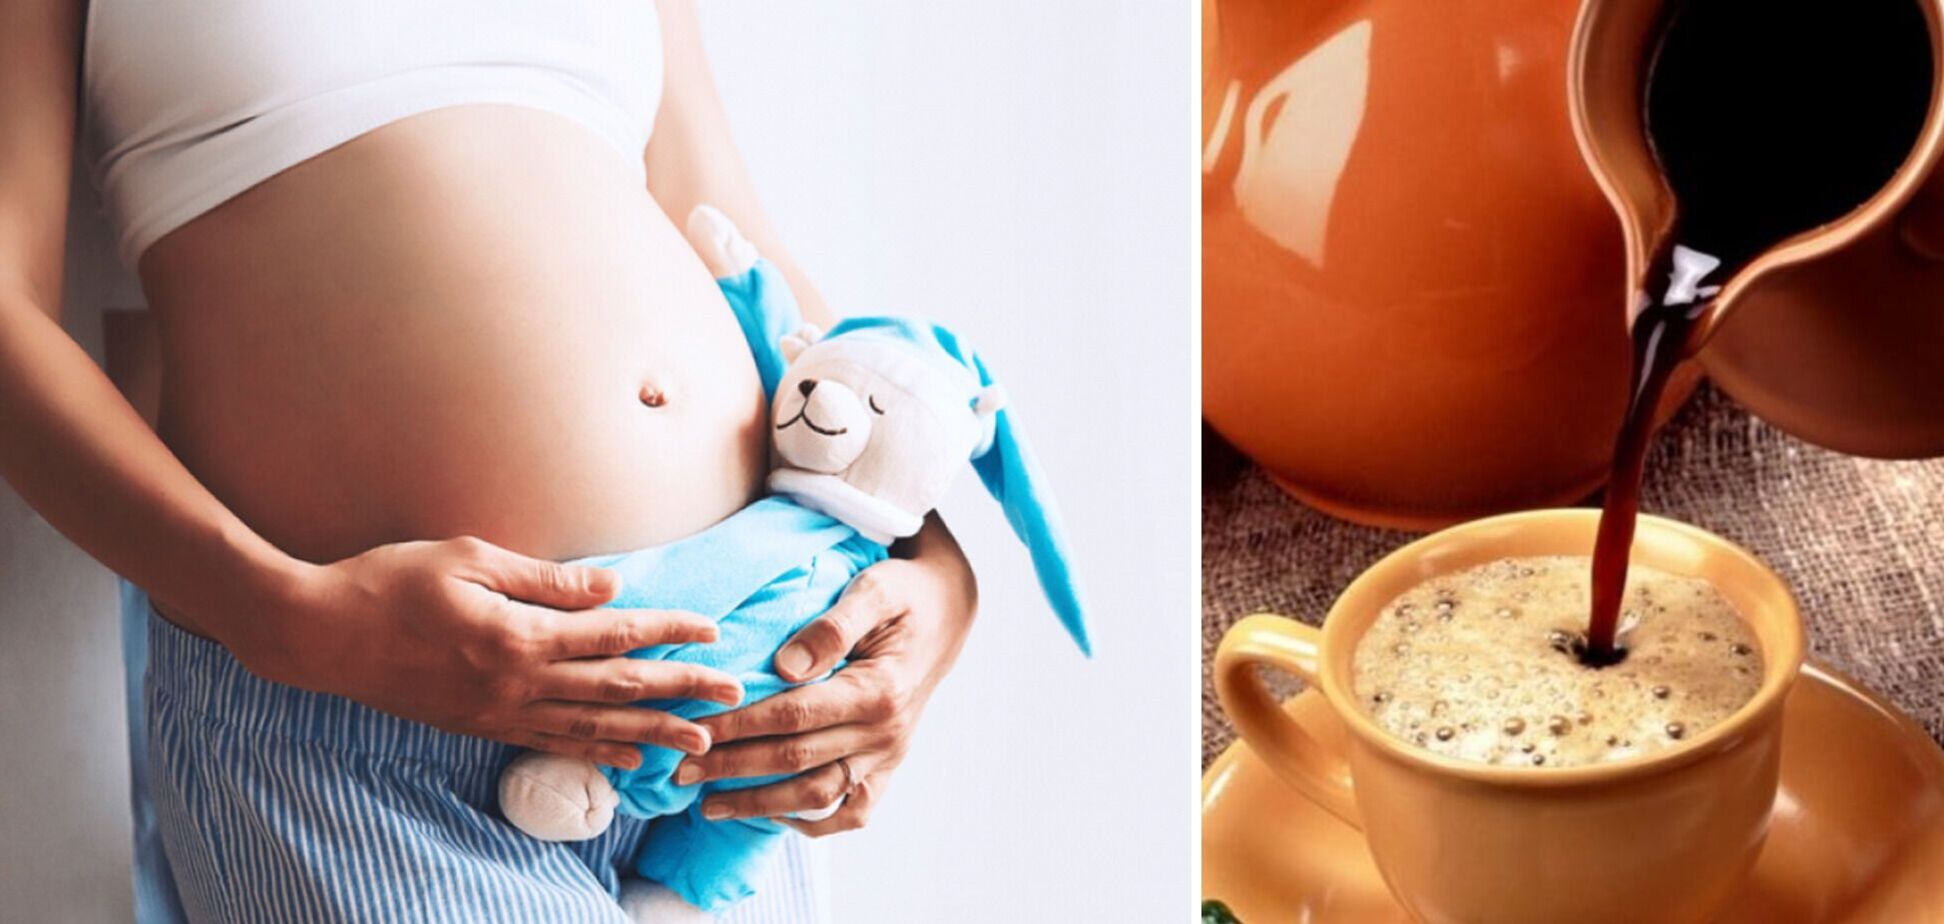 Напитки во время беременности: можно ли пить кофе, алкоголь, колу или молоко